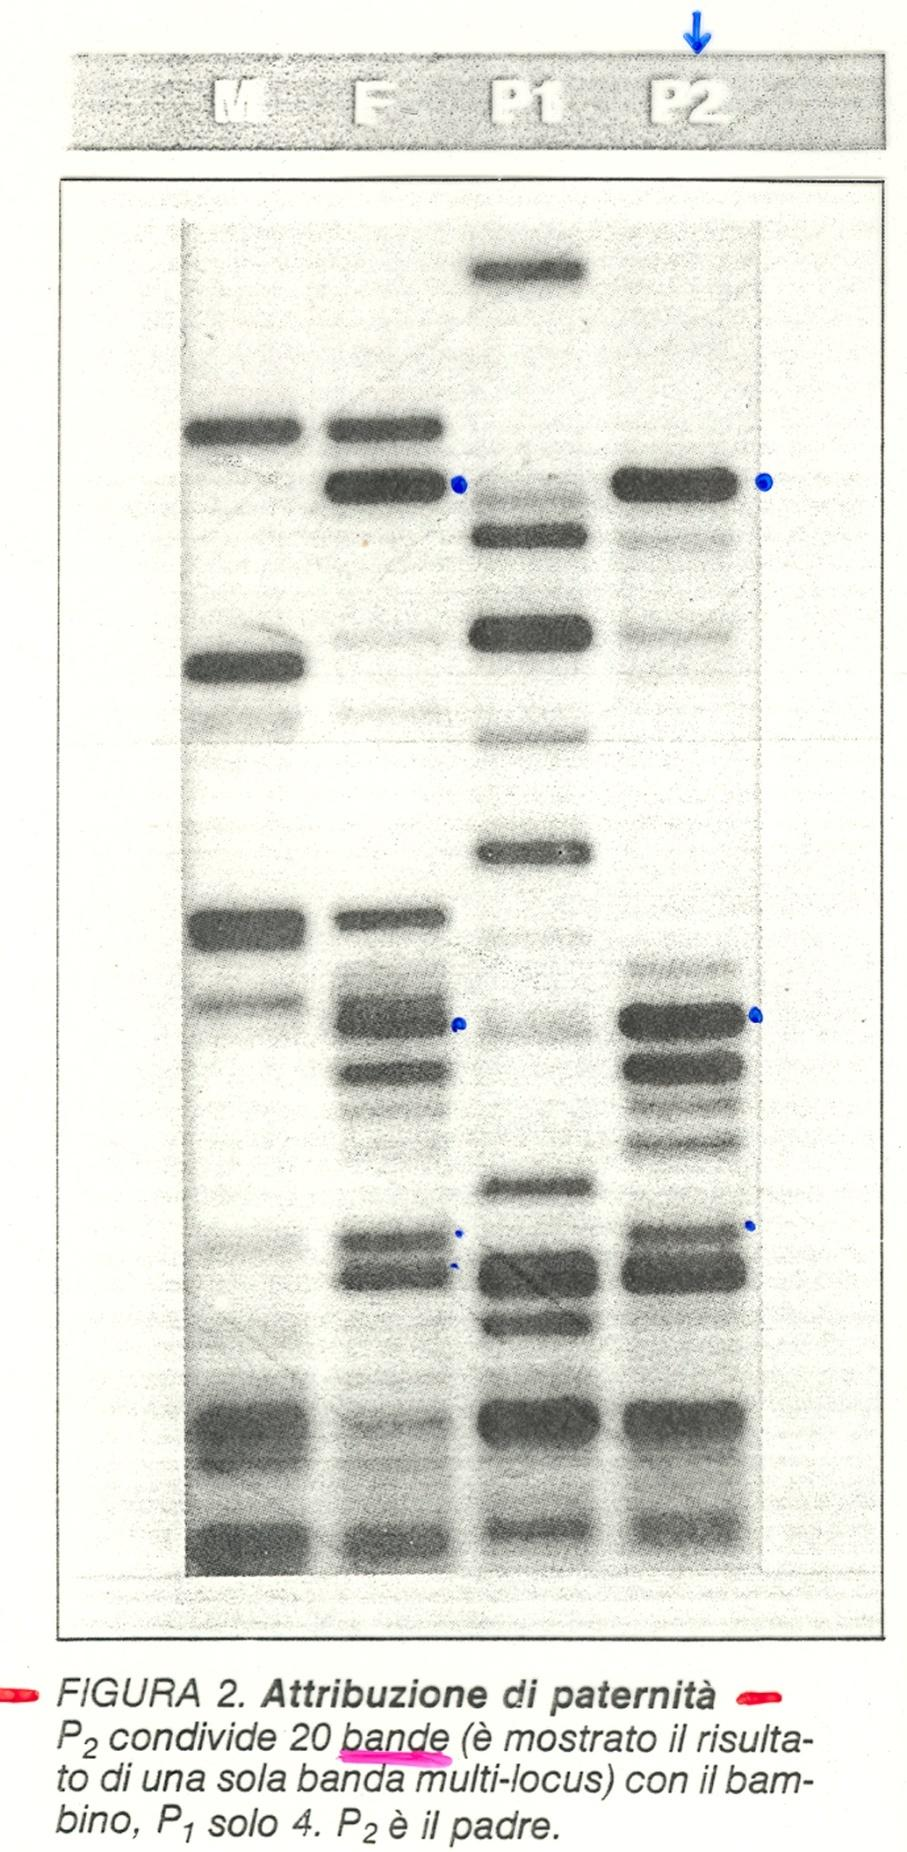 Attribuzione di paternità DNA fingerprinting